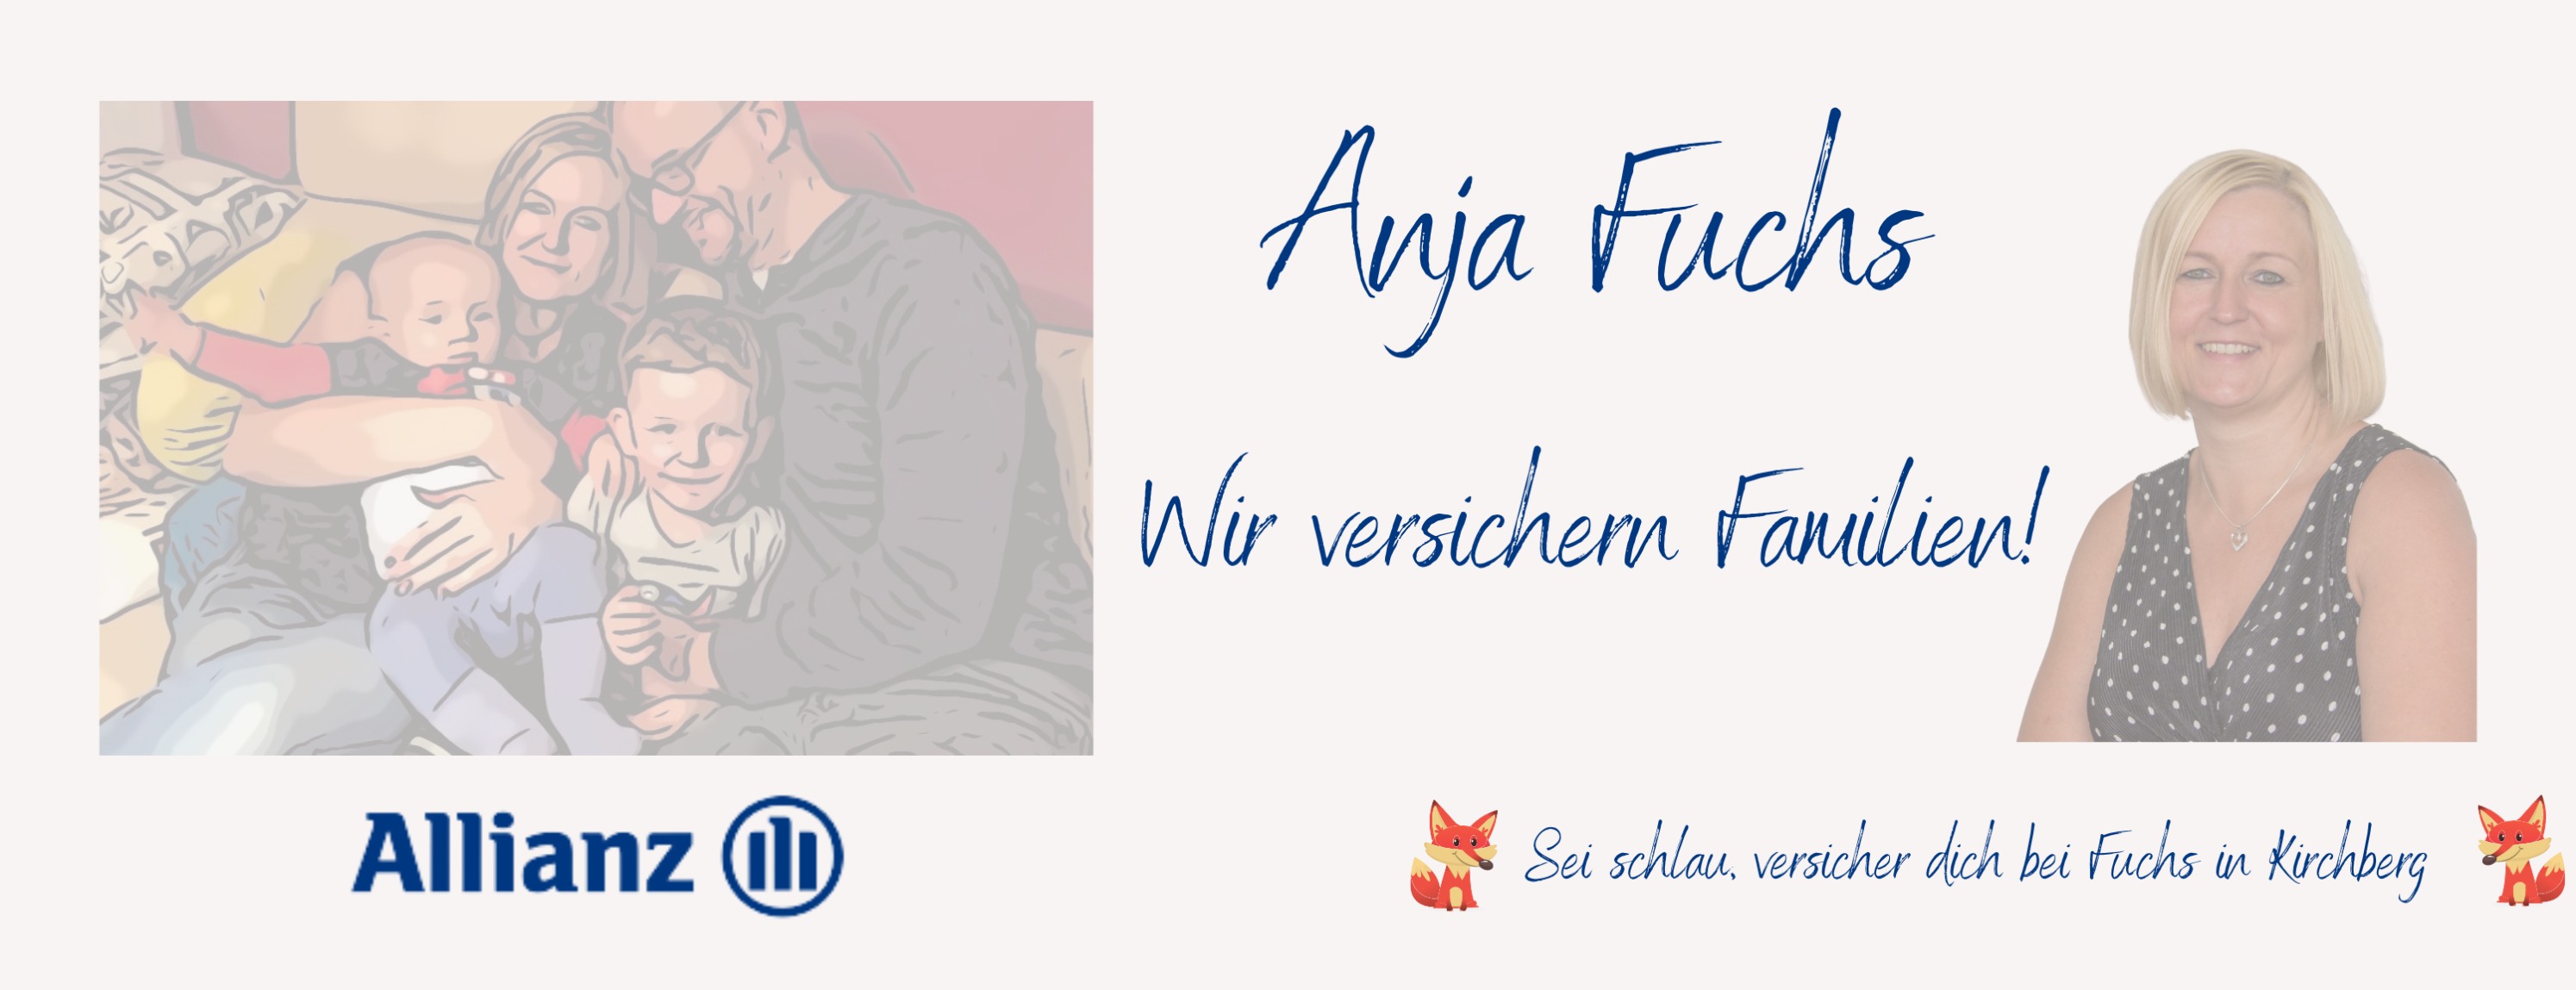 Allianz Versicherung Anja Fuchs Kirchberg - Titelbild